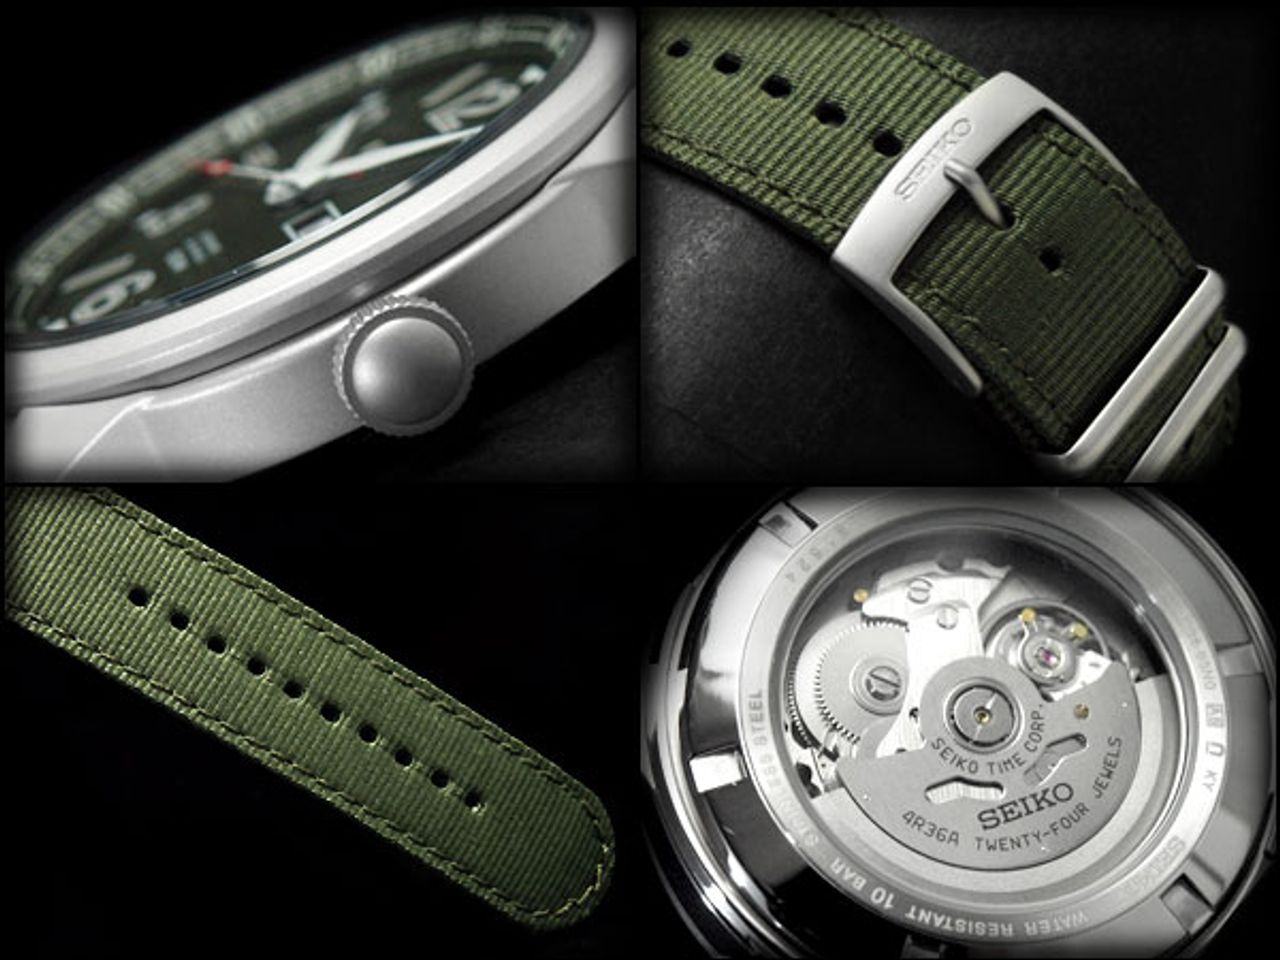 Chiếc đồng hồ Seiko nam này thiết kế tinh xảo đến từng chi tiết